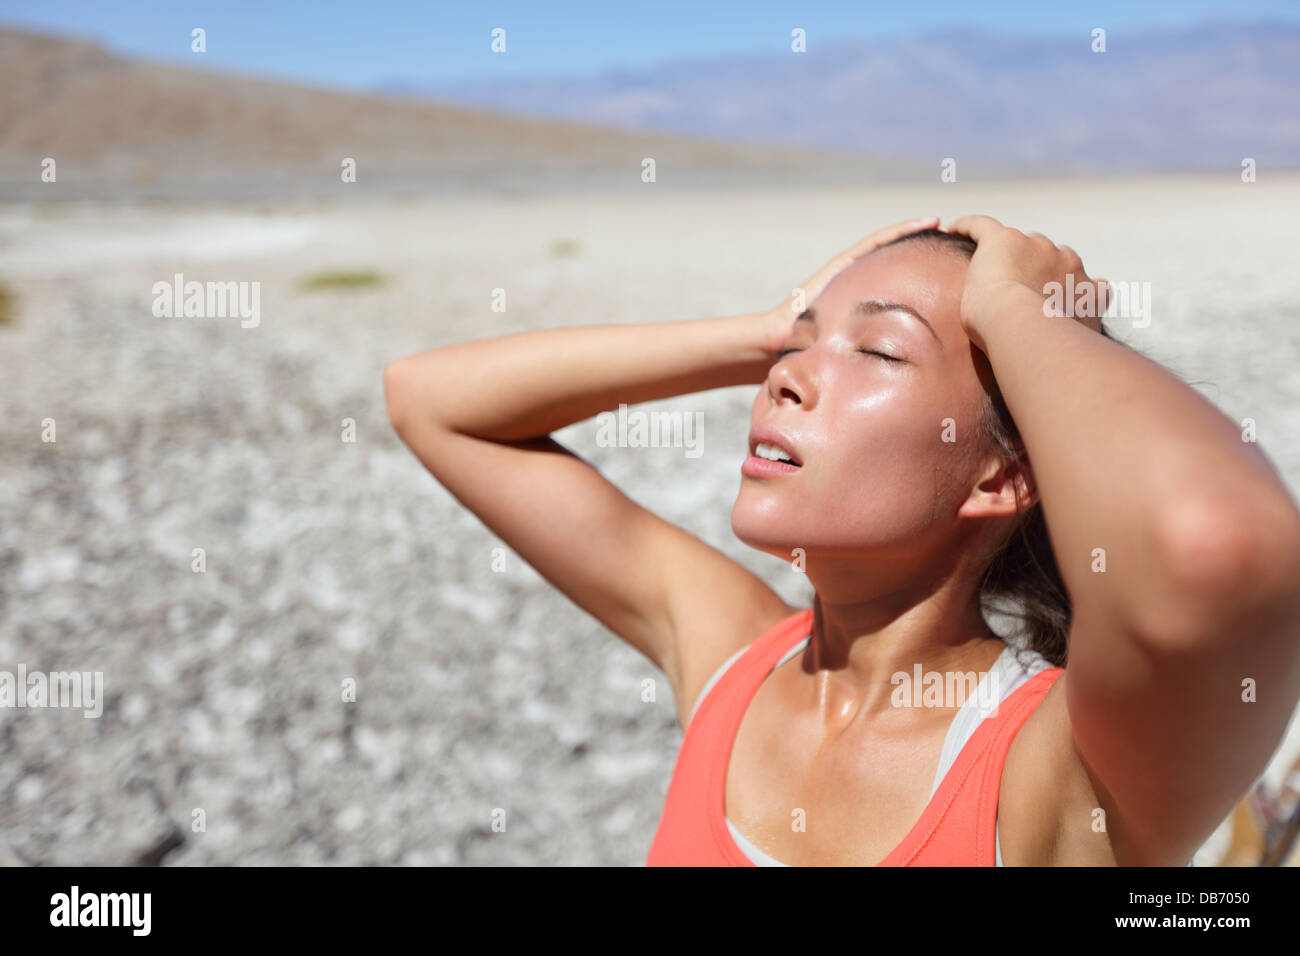 Wüste Frau durstig in Death Valley entwässert. Dehydratation, Überhitzung, Durst und Hitzeschlag Konzept Bild mit Mädchen in der Wüste Natur. Stockfoto